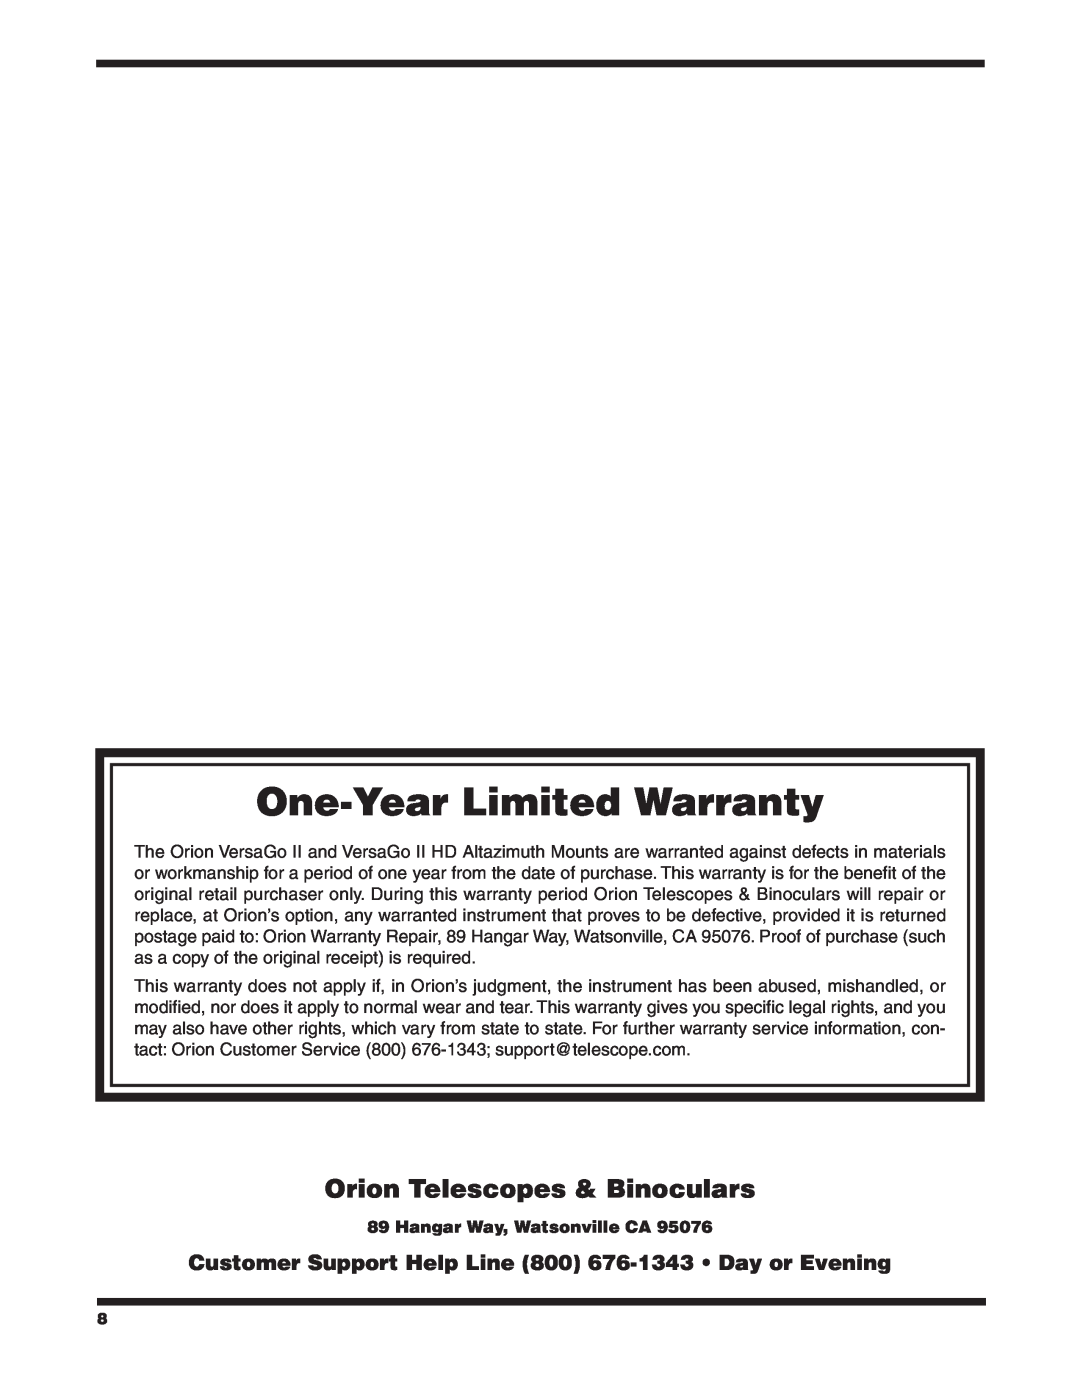 Orion #10105, #10104 instruction manual Orion Telescopes & Binoculars, Hangar Way, Watsonville CA, One-Year Limited Warranty 